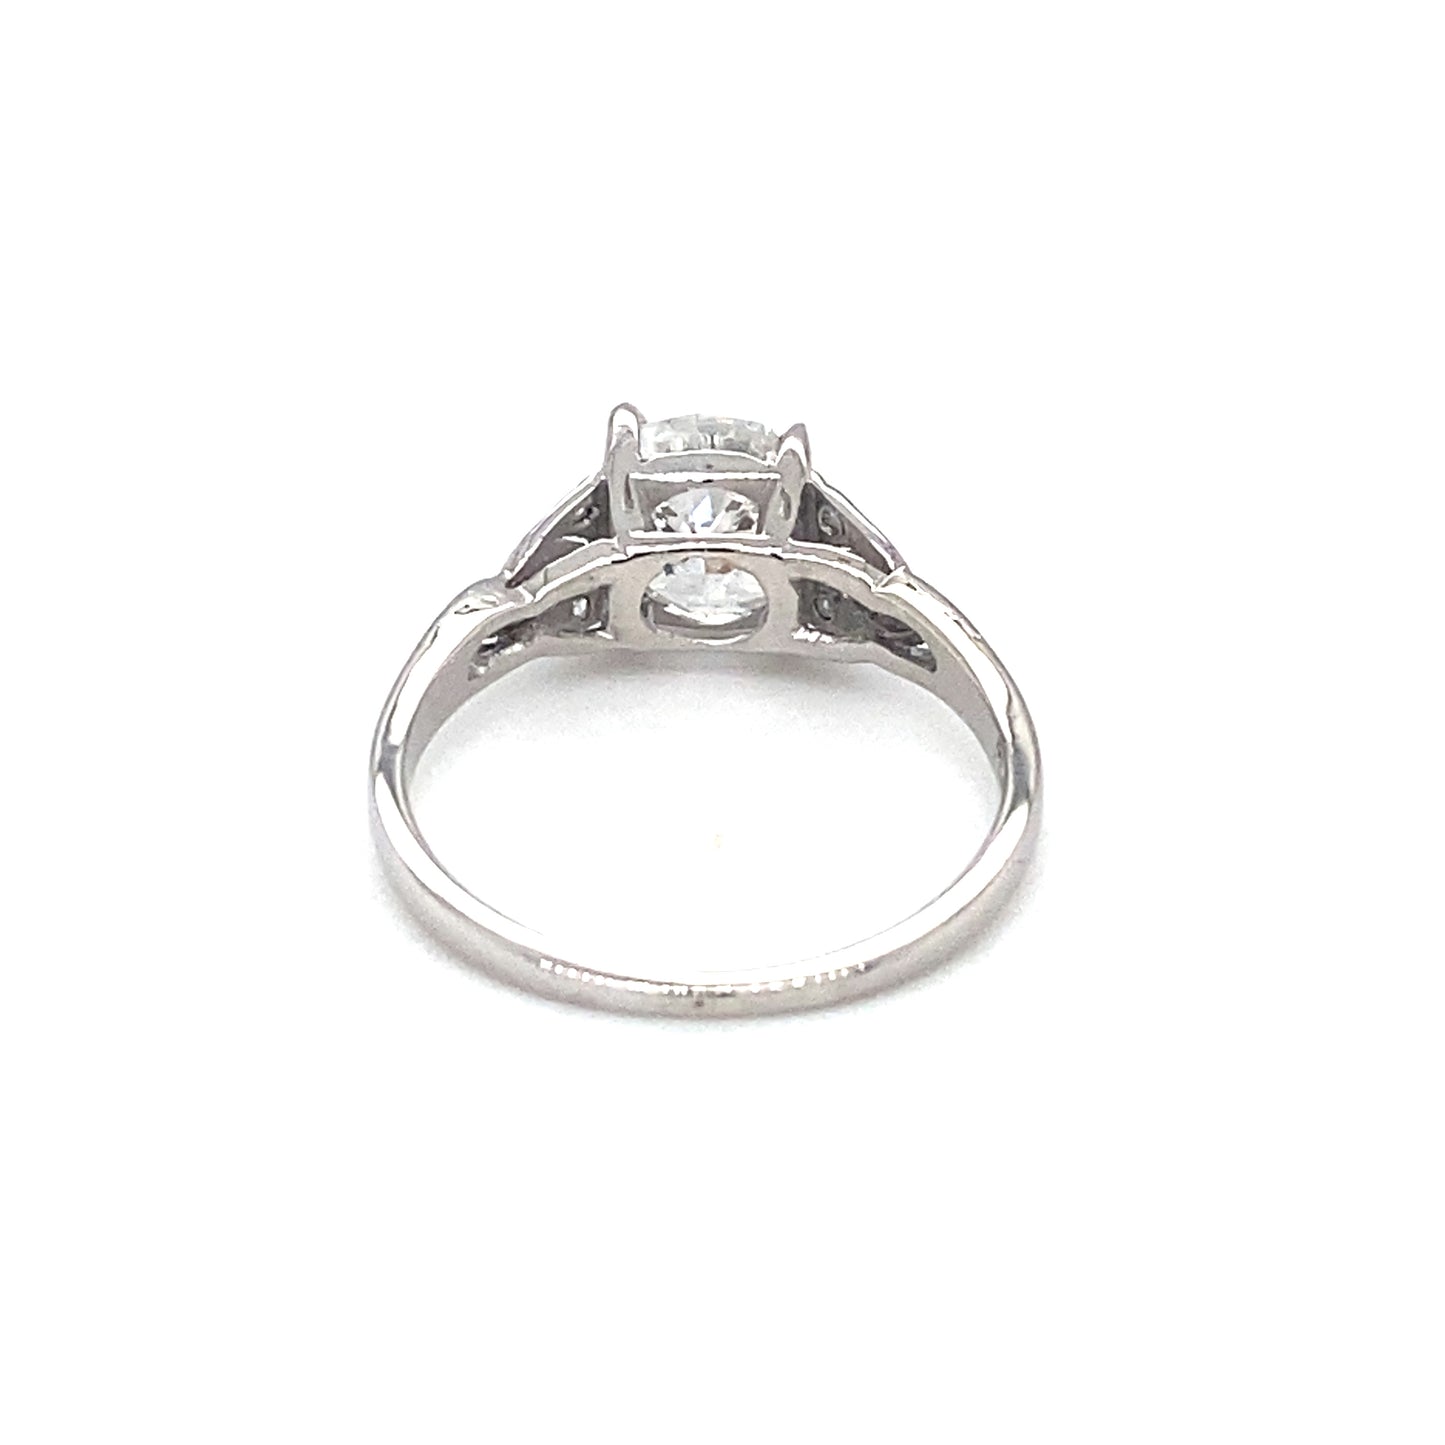 Circa 1920s Art Deco 1.0ct E Color Diamond Engagement Ring in Platinum